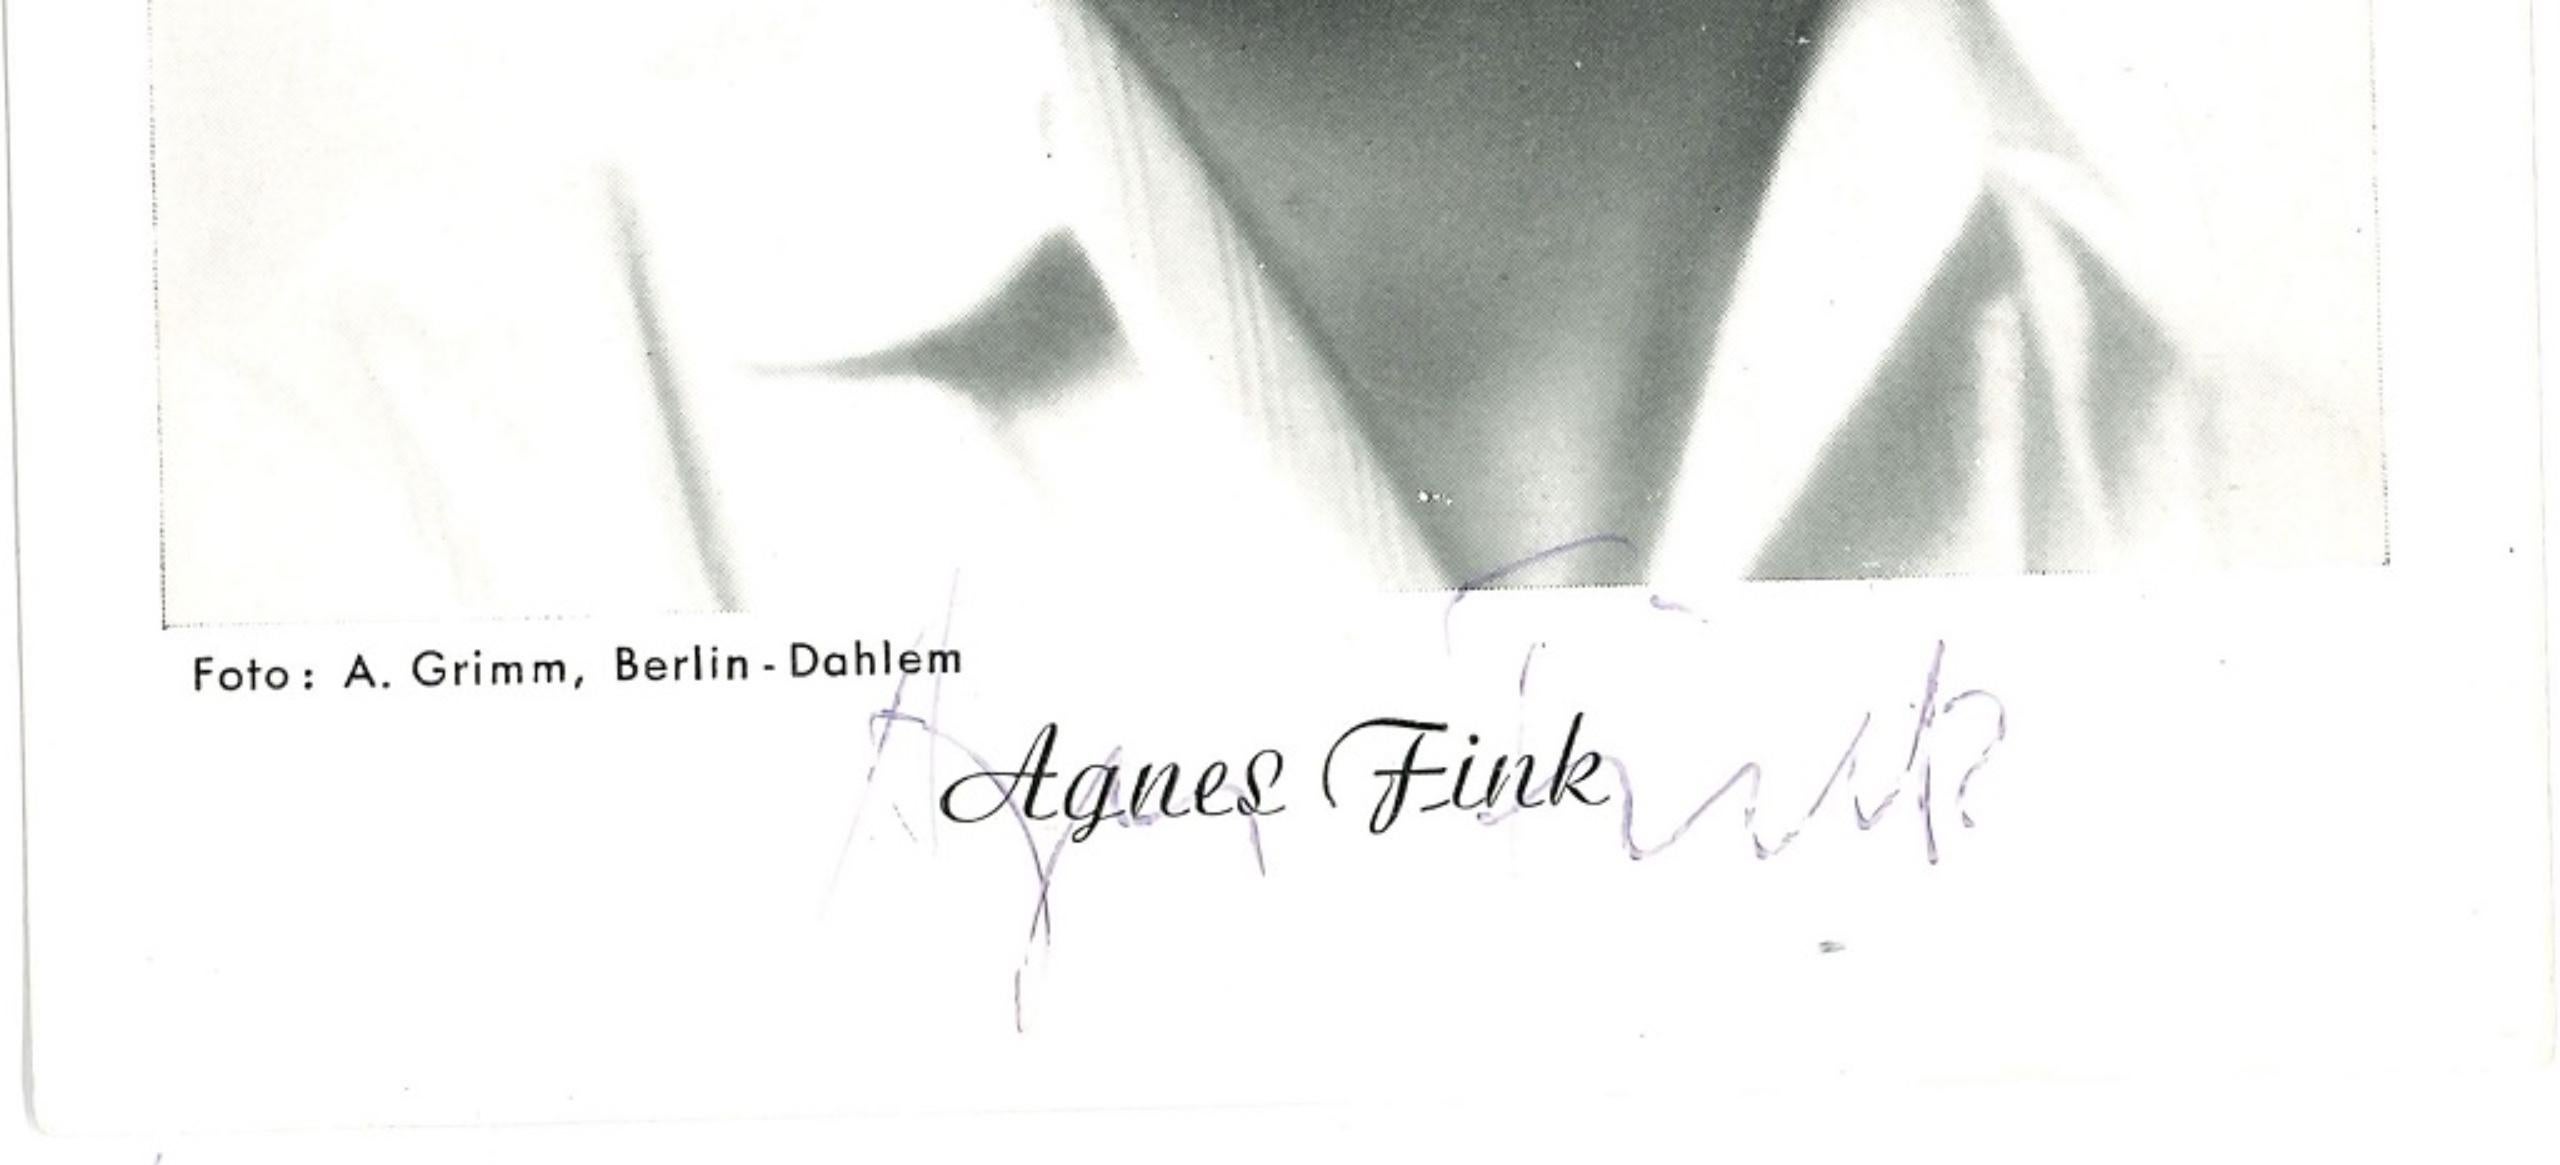 Autographed Portrait of Agnes Fink - Original b/w Postcard Portrait - 1950s - Photograph by Unknown